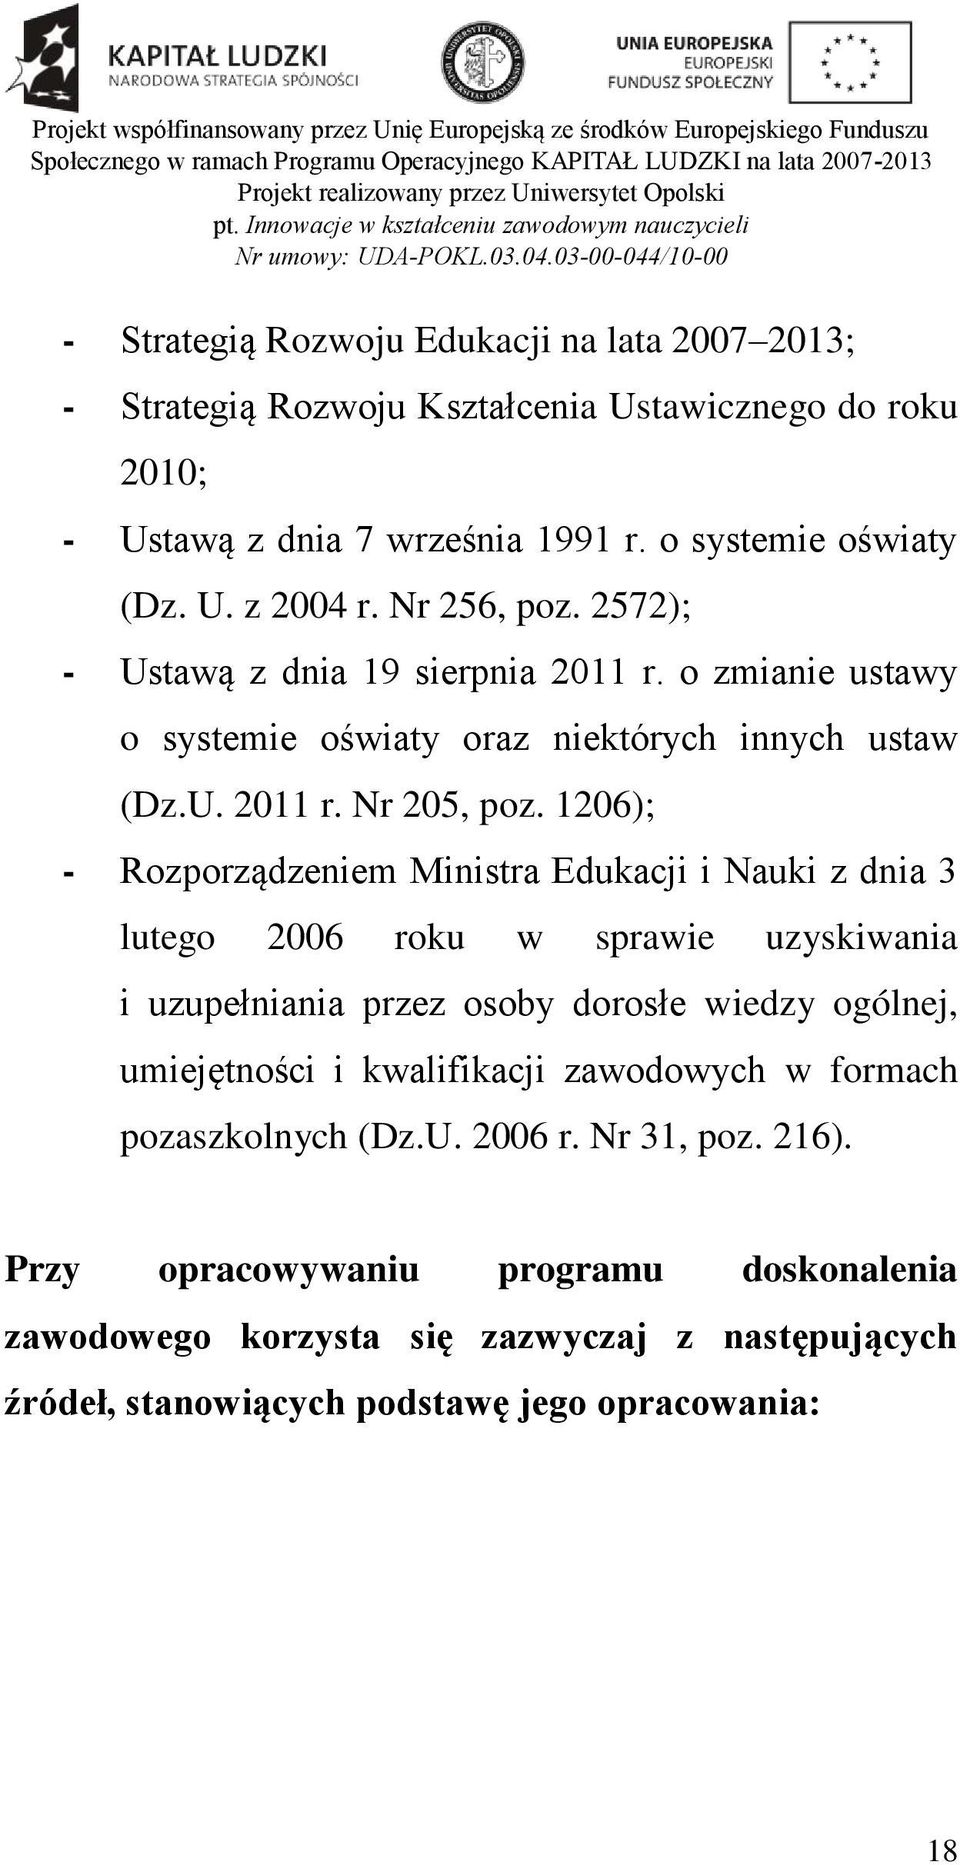 1206); - Rozporządzeniem Ministra Edukacji i Nauki z dnia 3 lutego 2006 roku w sprawie uzyskiwania i uzupełniania przez osoby dorosłe wiedzy ogólnej, umiejętności i kwalifikacji